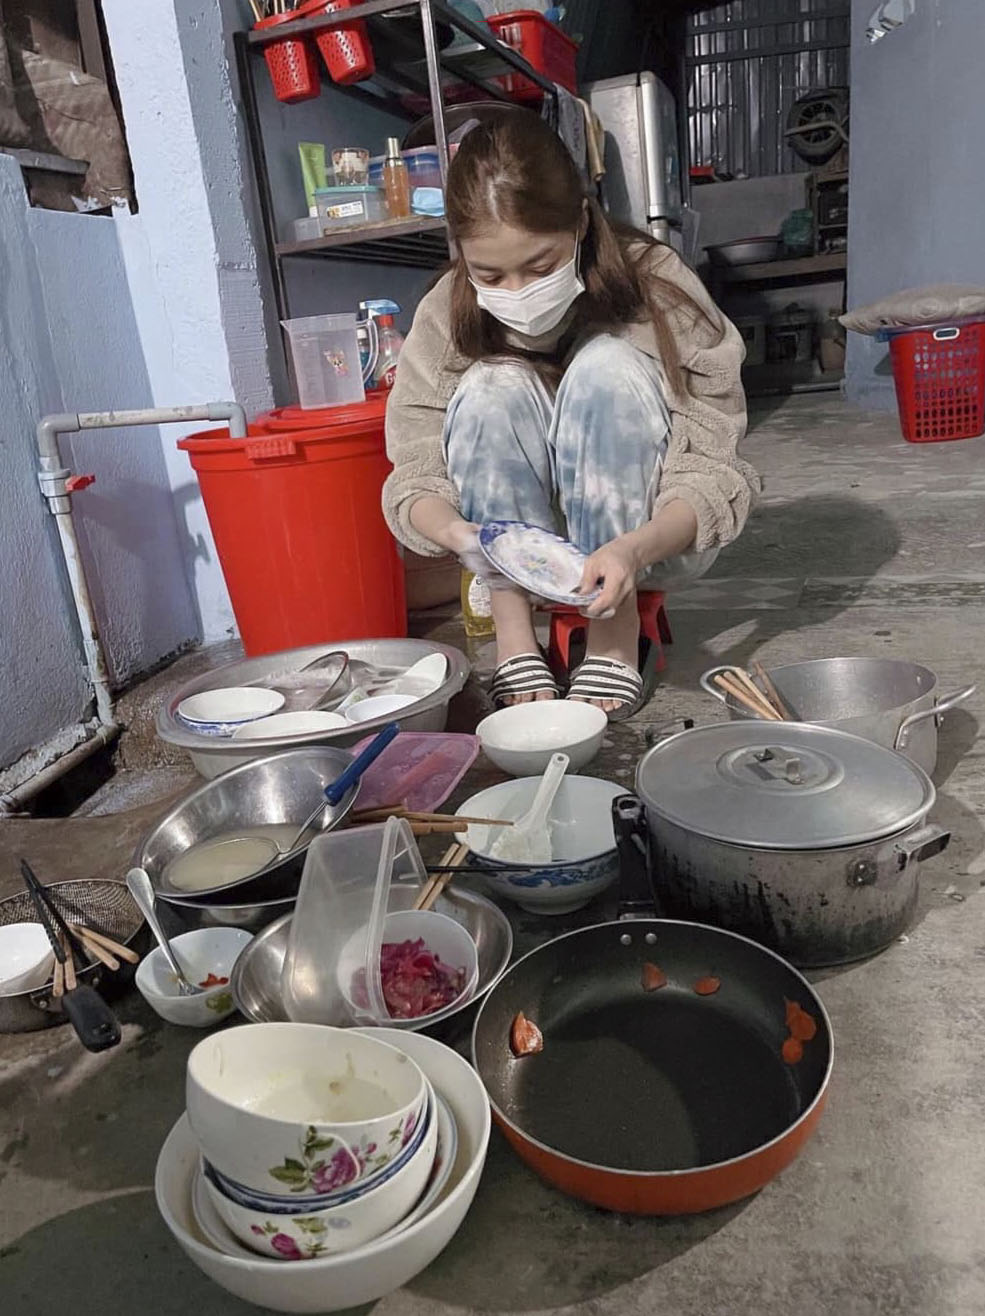 Hình ảnh á hậu Kiều Loan xắn tay áo, ngồi dưới bếp cặm cụi rửa bát sau khi 'khăn gói' về quê nhà Quảng Nam ăn tết đã khiến rất nhiều người cảm thấy thích thú.
Xem thêm